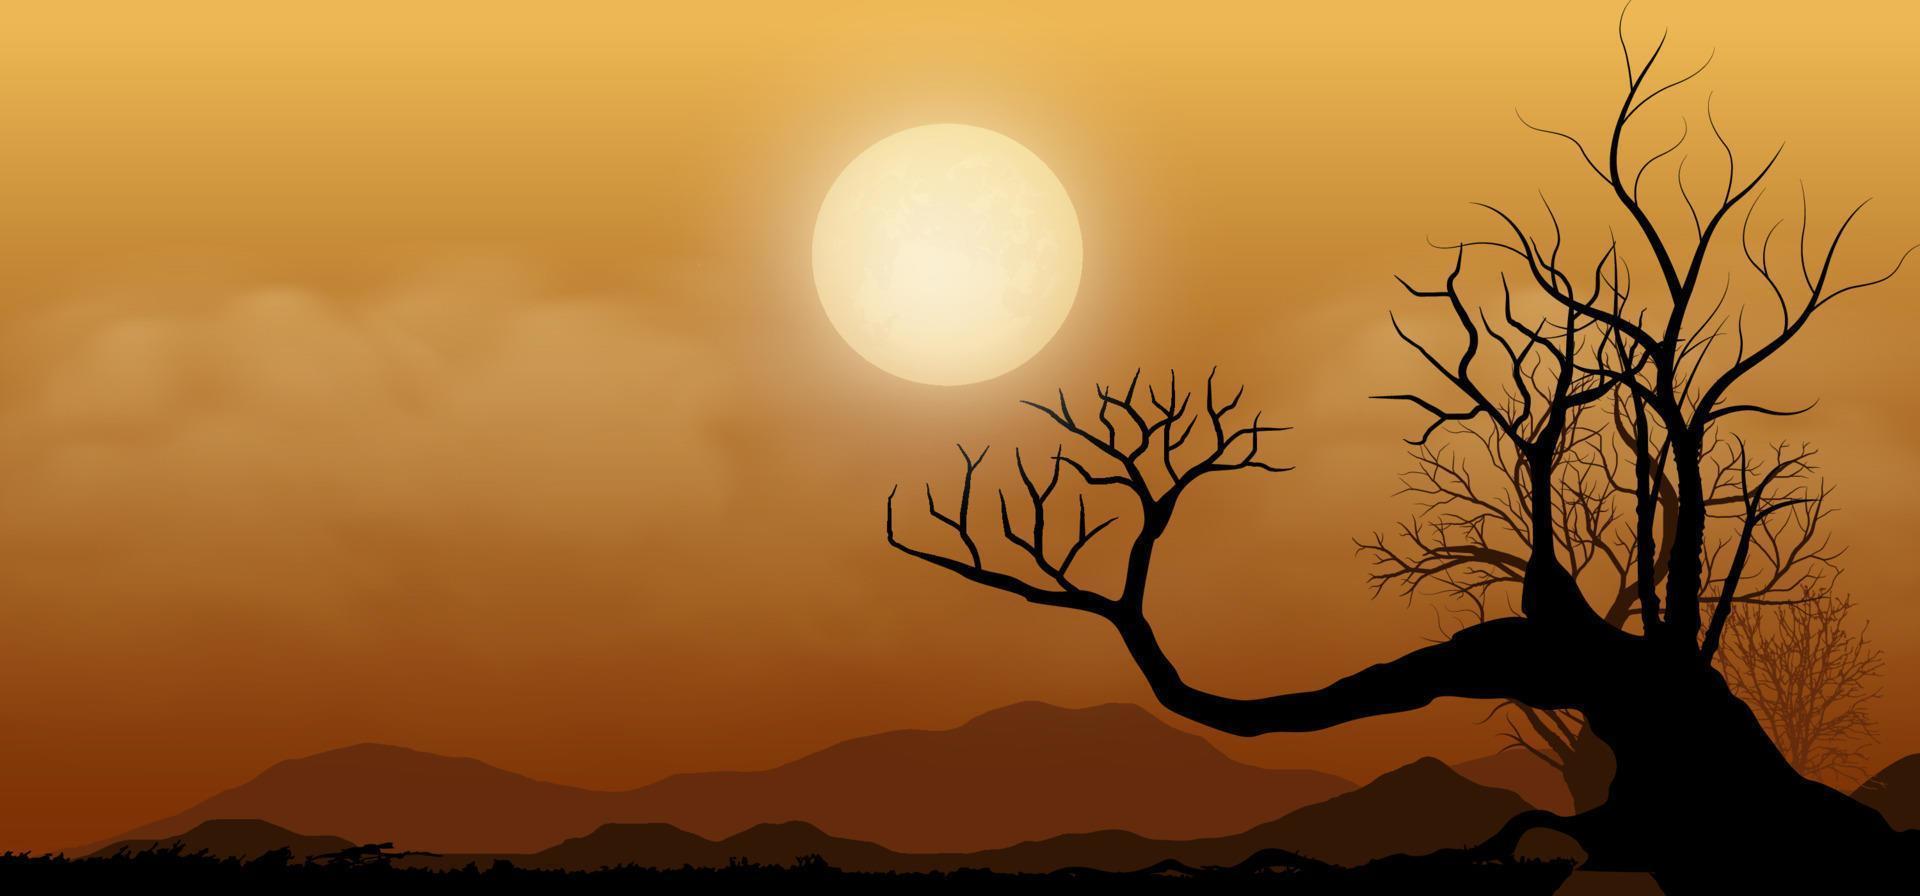 puesta de sol o luna llena en africano vector